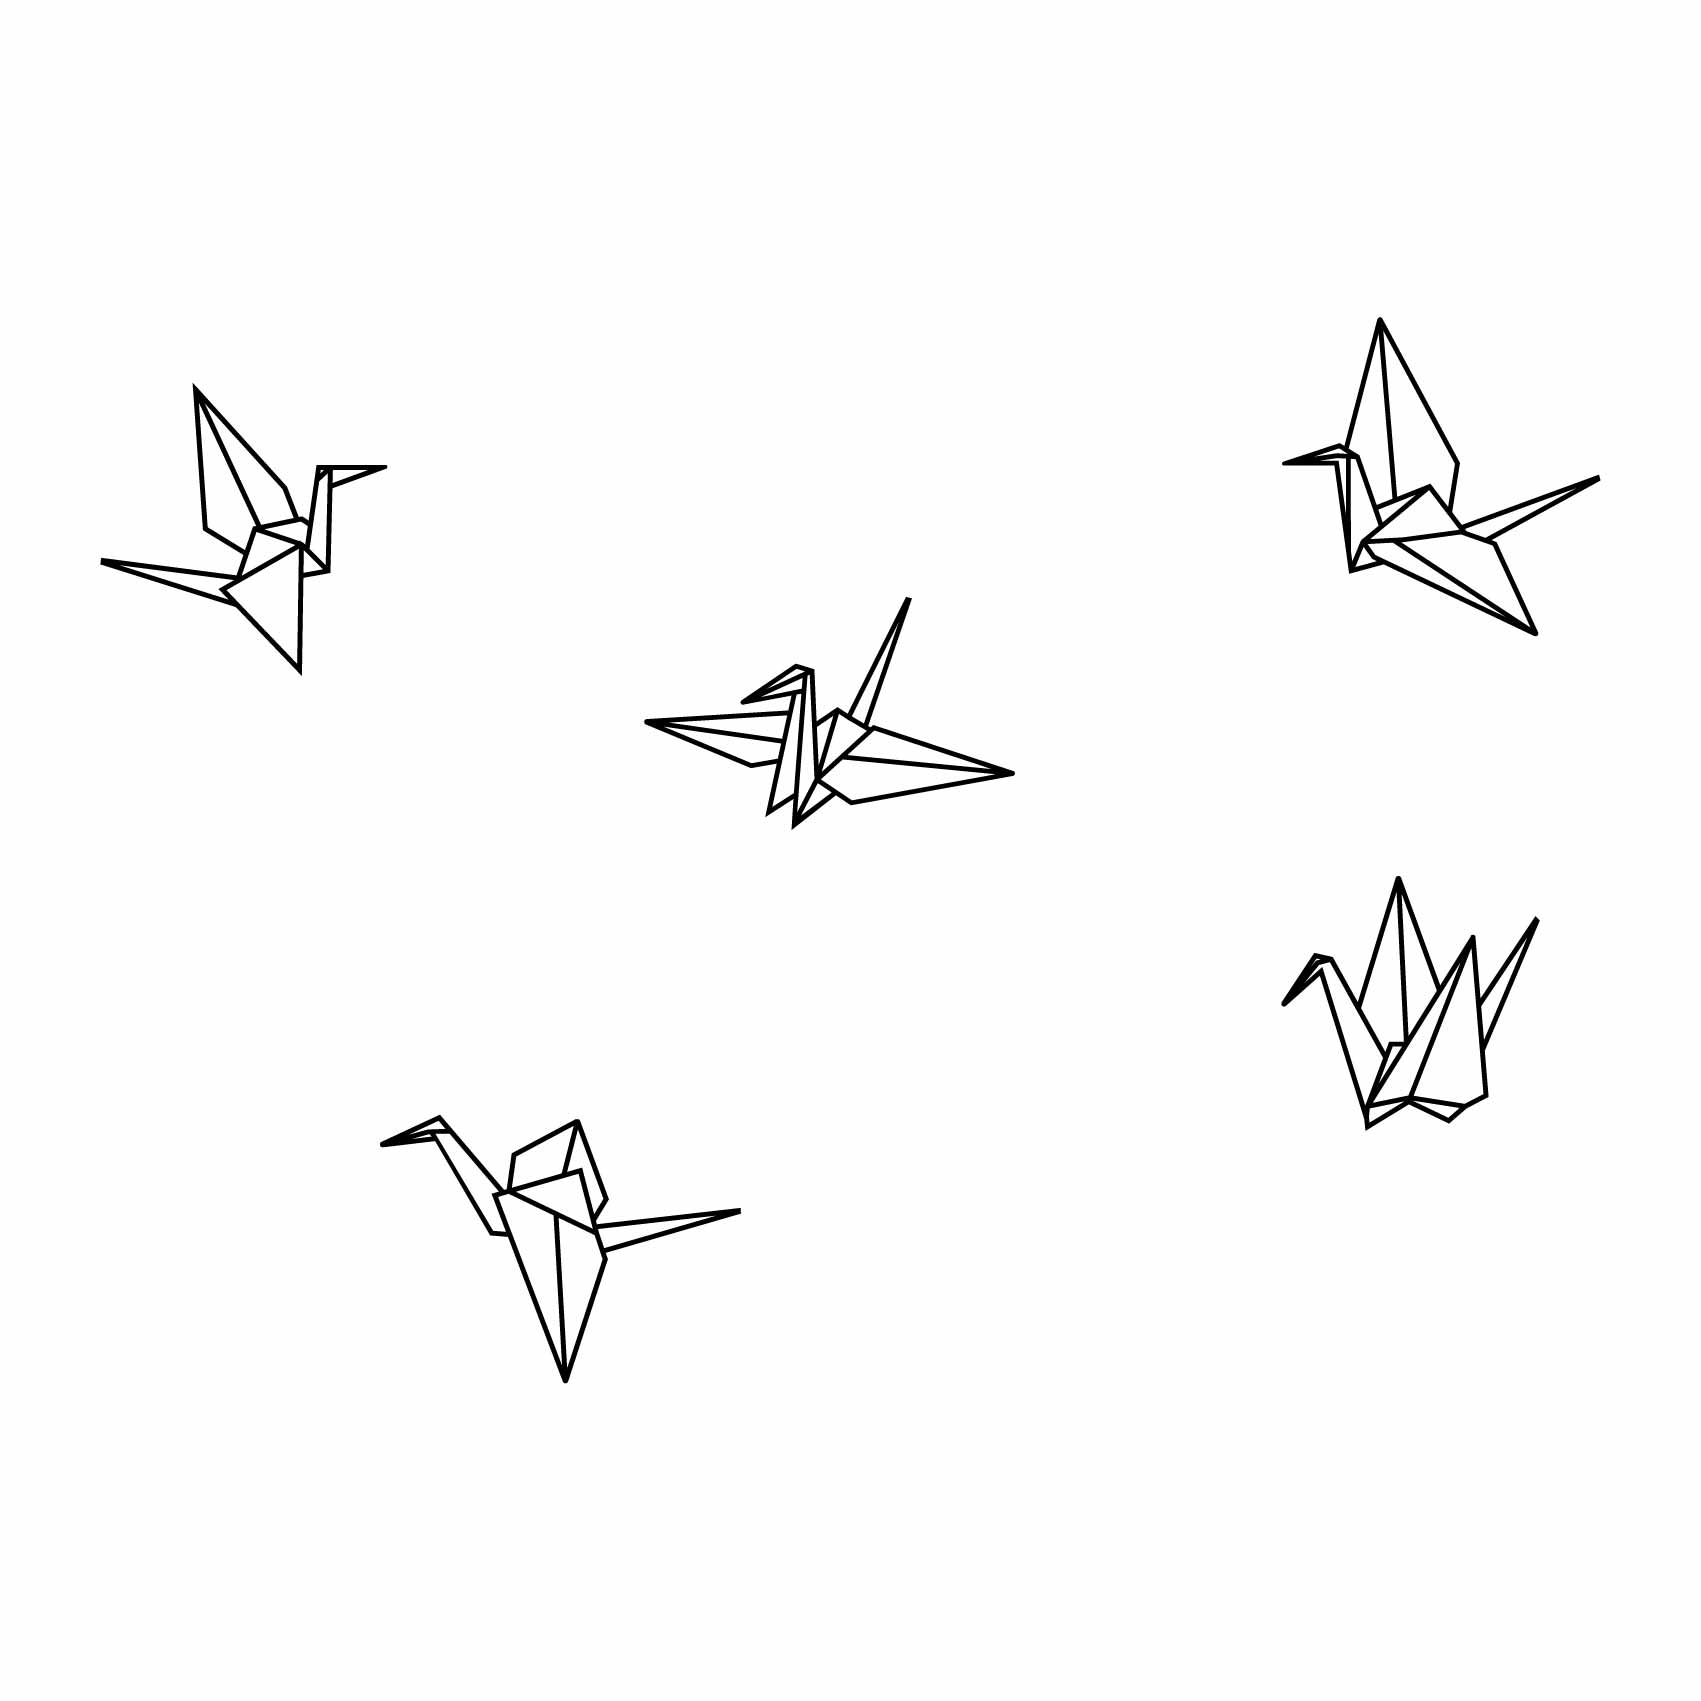 stickers-grue-origami-ref1grue-stickers-muraux-origami-grue-autocollant-chambre-salon-deco-sticker-mural-origami-animaux-(2)